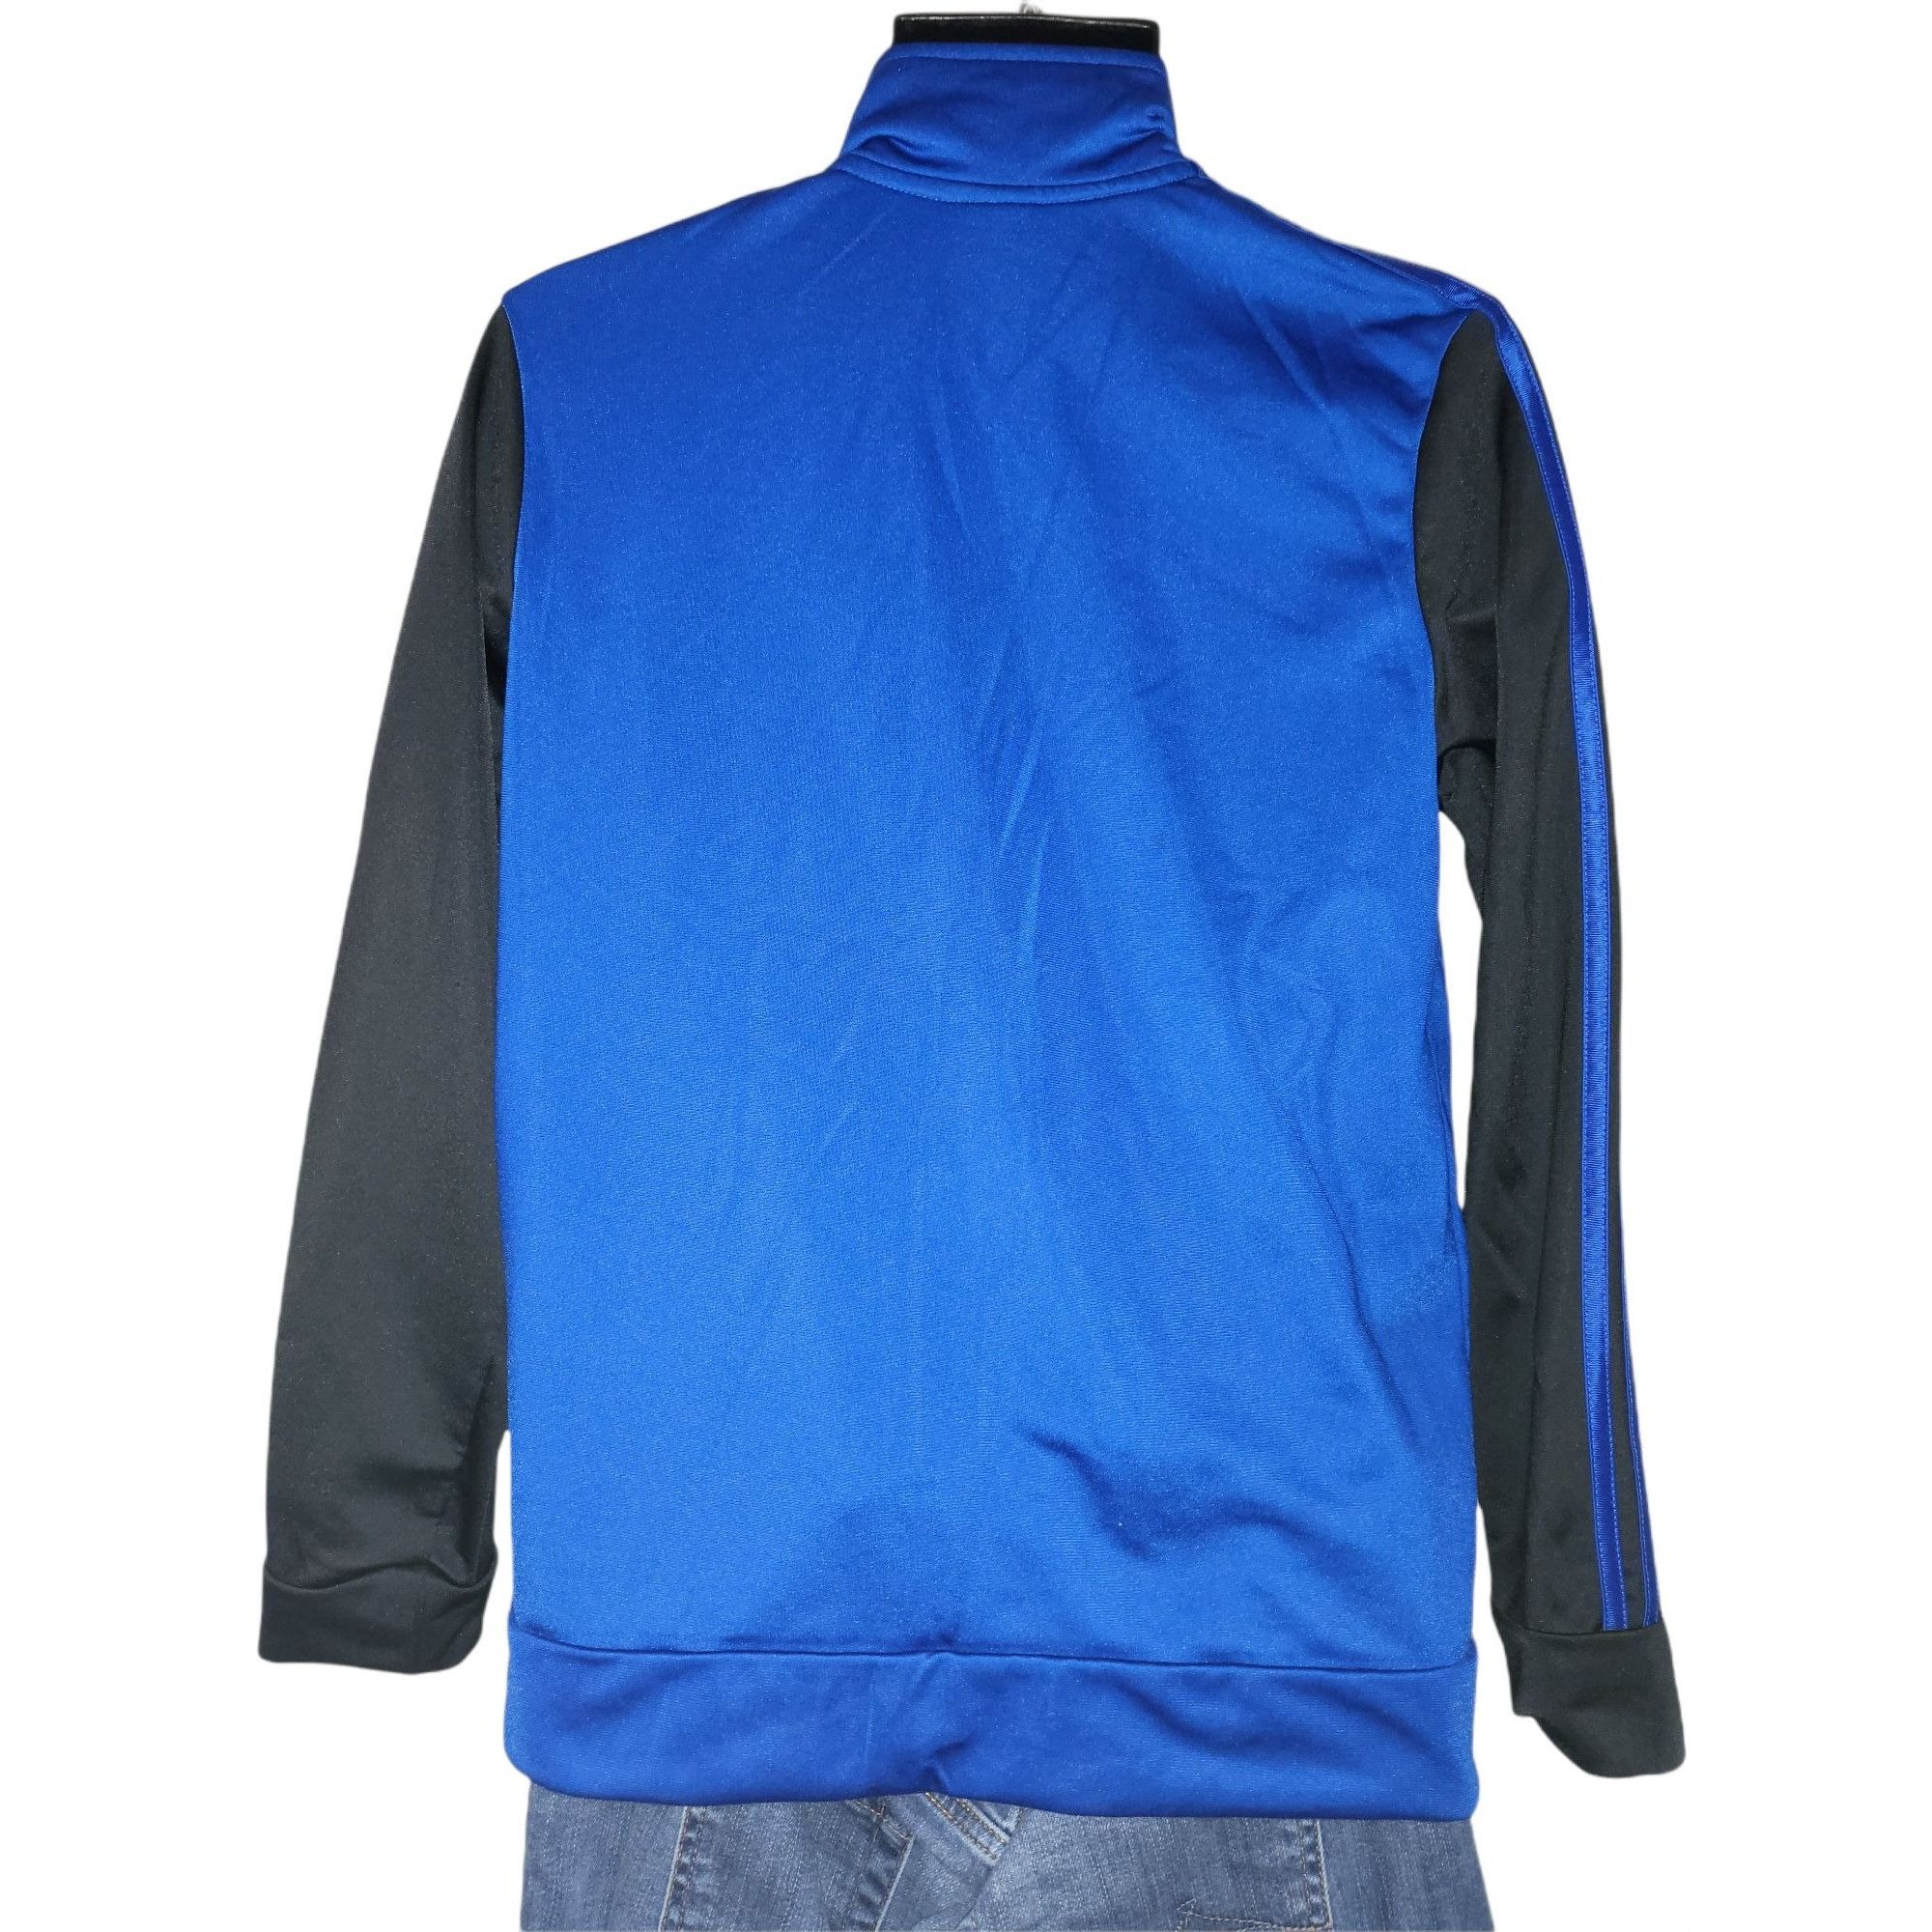 Adidas Adidas Blue Long Sleeve Striped Sz XL 18 / 20 Track Jacket W Size XL / US 12-14 / IT 48-50 - 5 Thumbnail